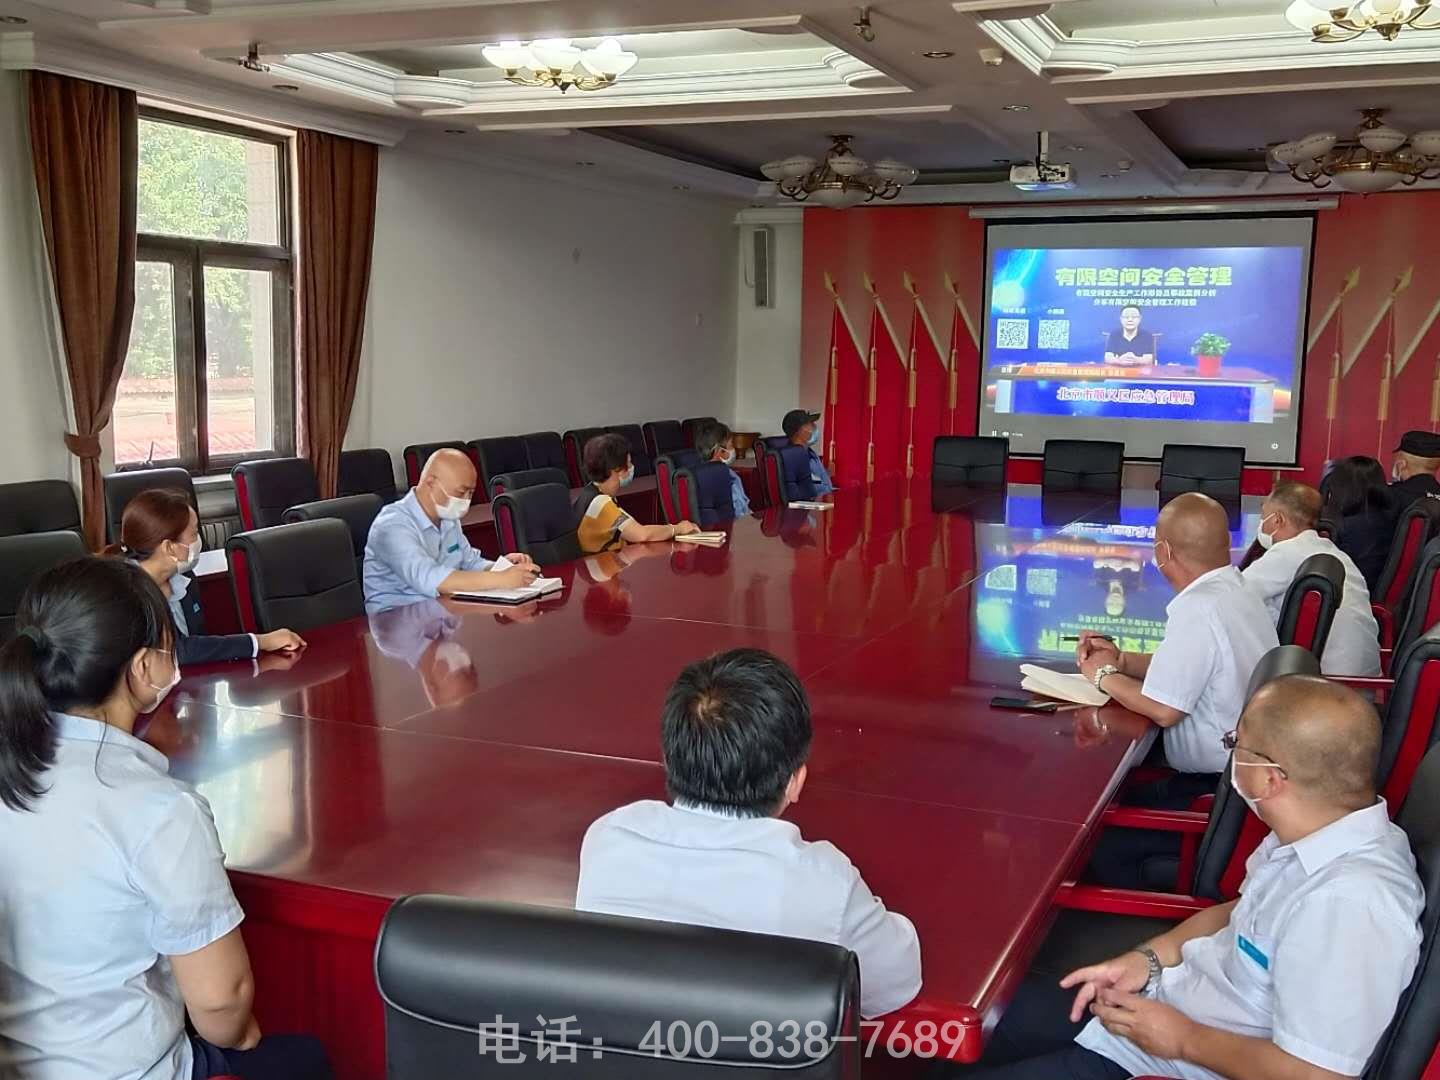 北京潮白陵园组织员工观看有限空间安全管理网络直播